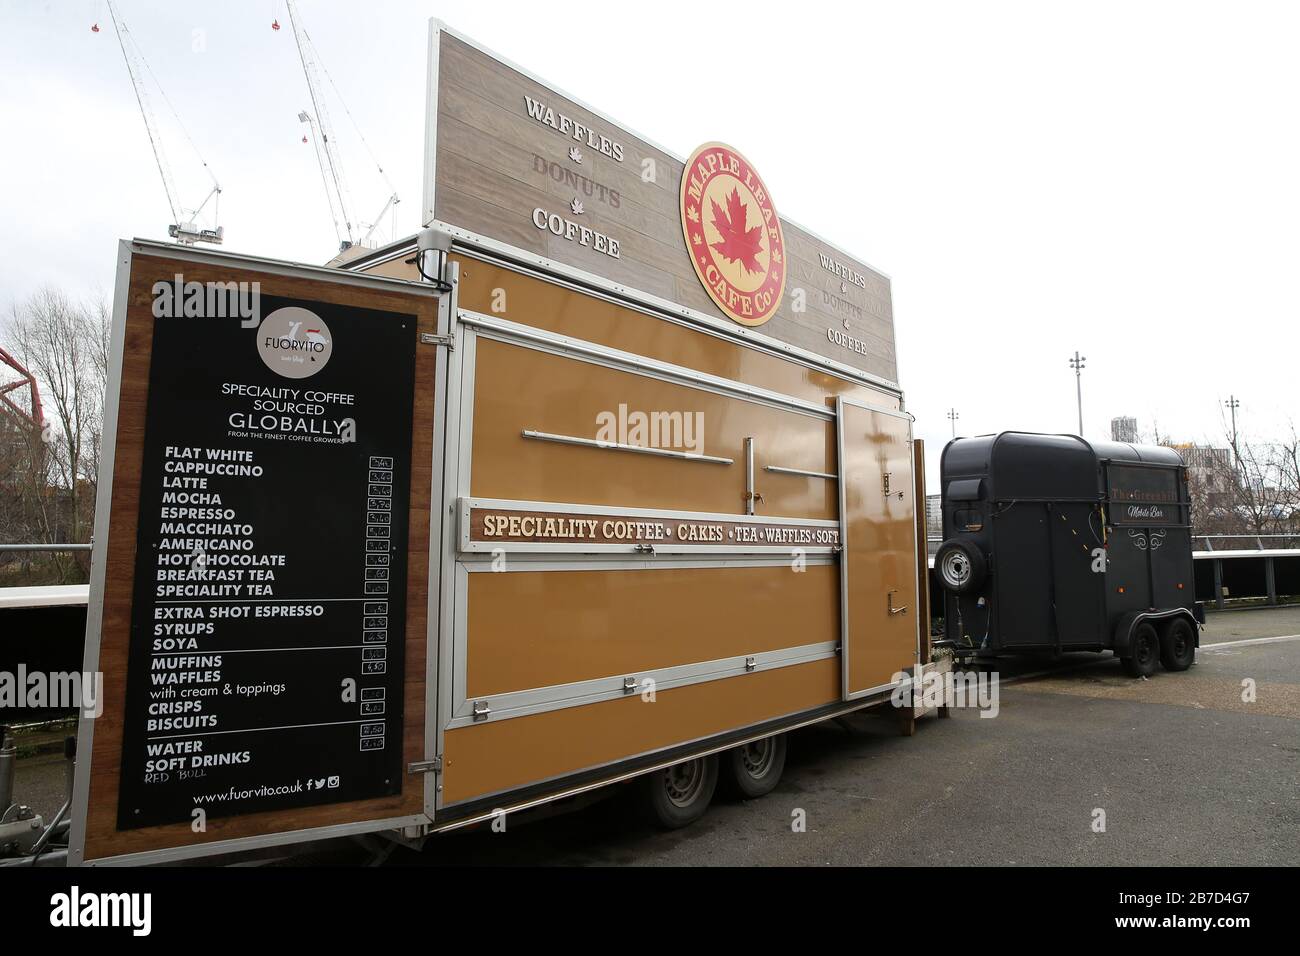 Ein geschlossener Kaffee-Lieferwagen außerhalb des Londoner Stadions, der Heimat des West Ham United Football Club, nach der Ankündigung vom Freitag, dass die Premier League alle Spiele bis Samstag, den 4. April 2020 ausgesetzt hat. Stockfoto